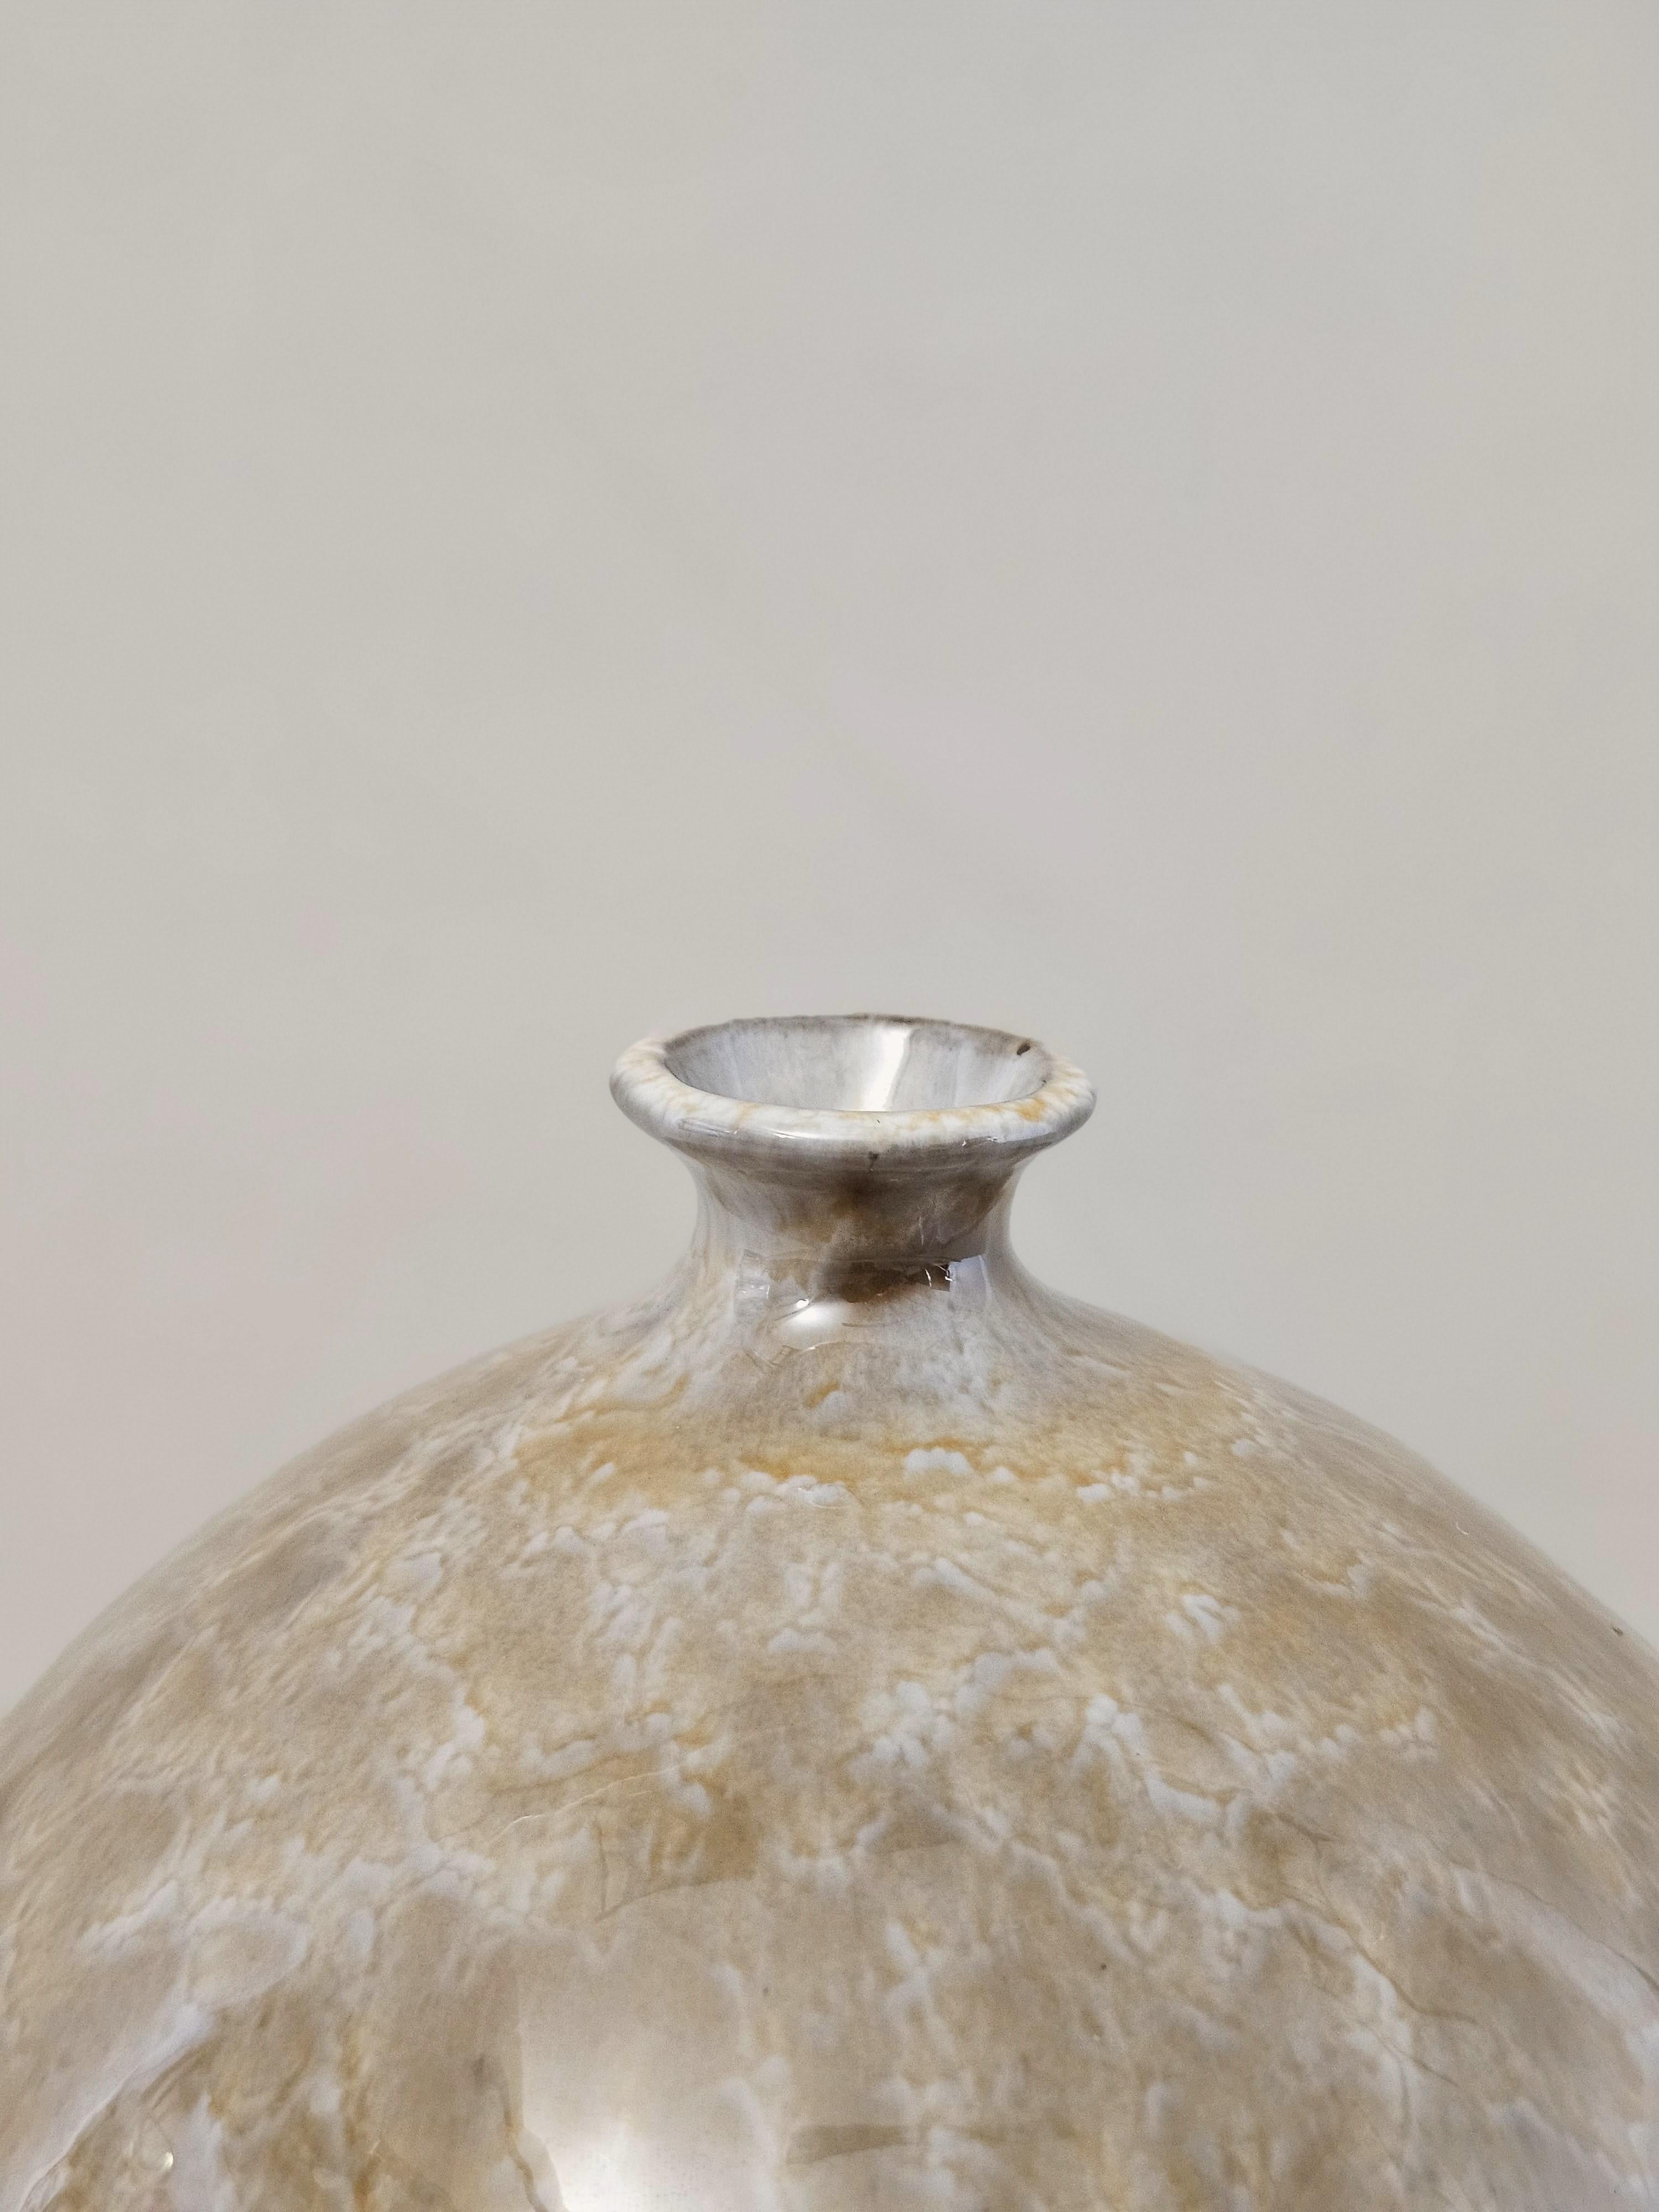 Enameled Vase Decorative Object Ceramic Enamelled Midcentury Modern Italian Design 1960s For Sale